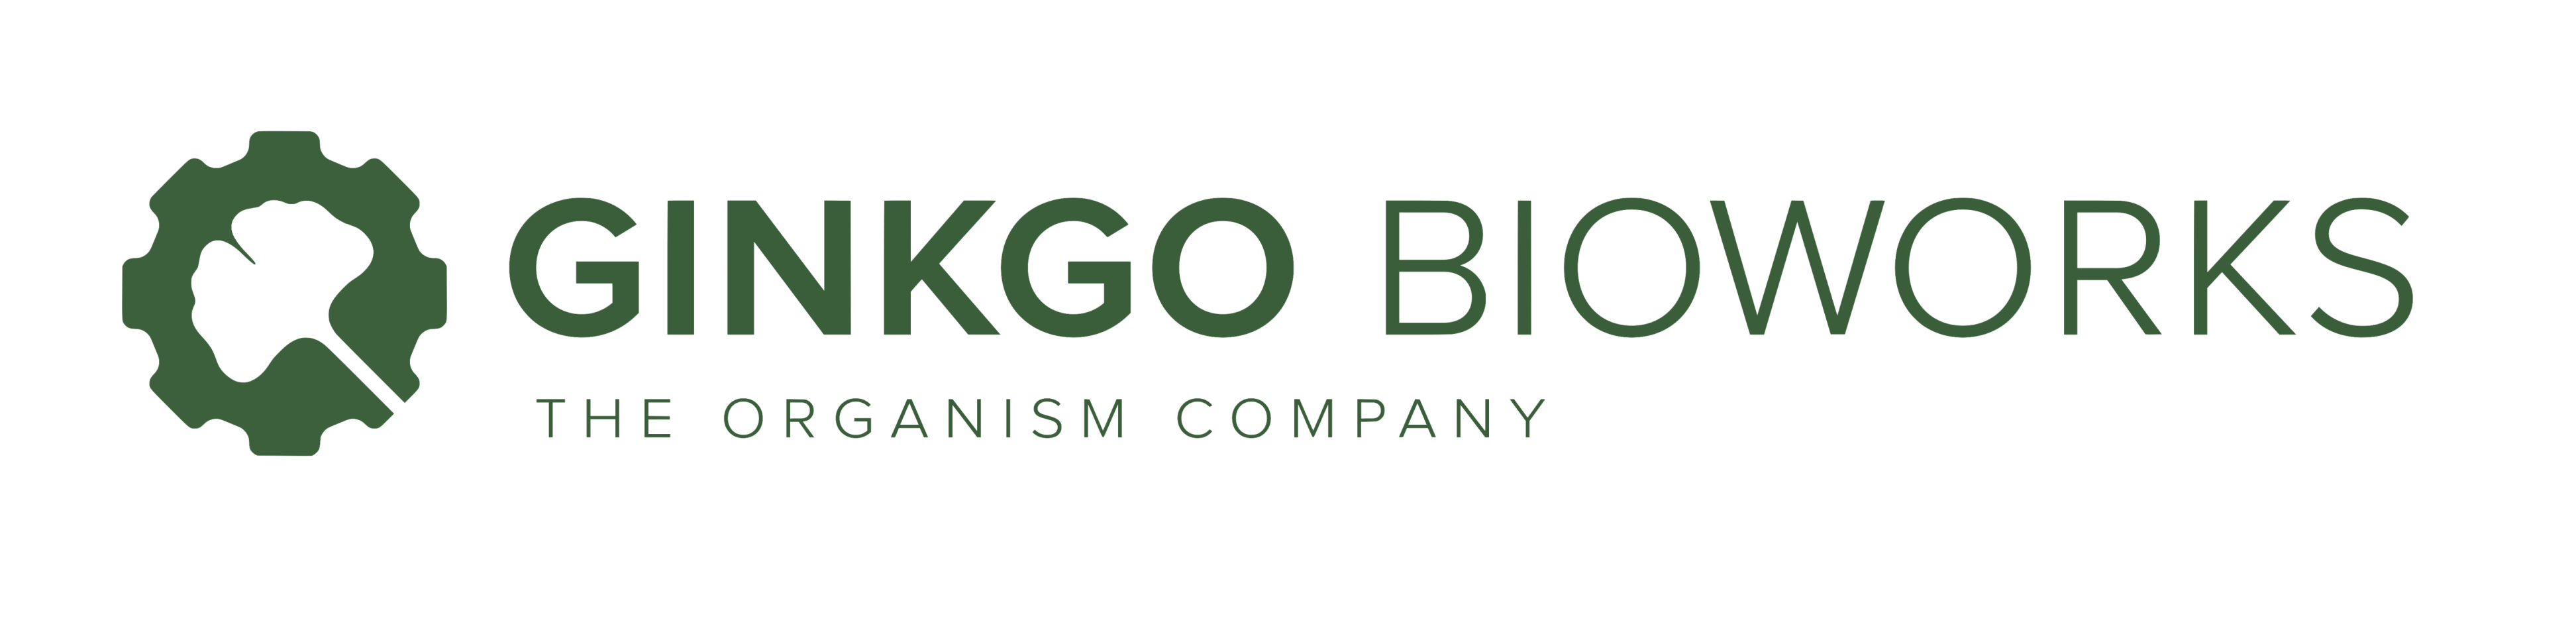 Design jobs at Ginkgo Bioworks